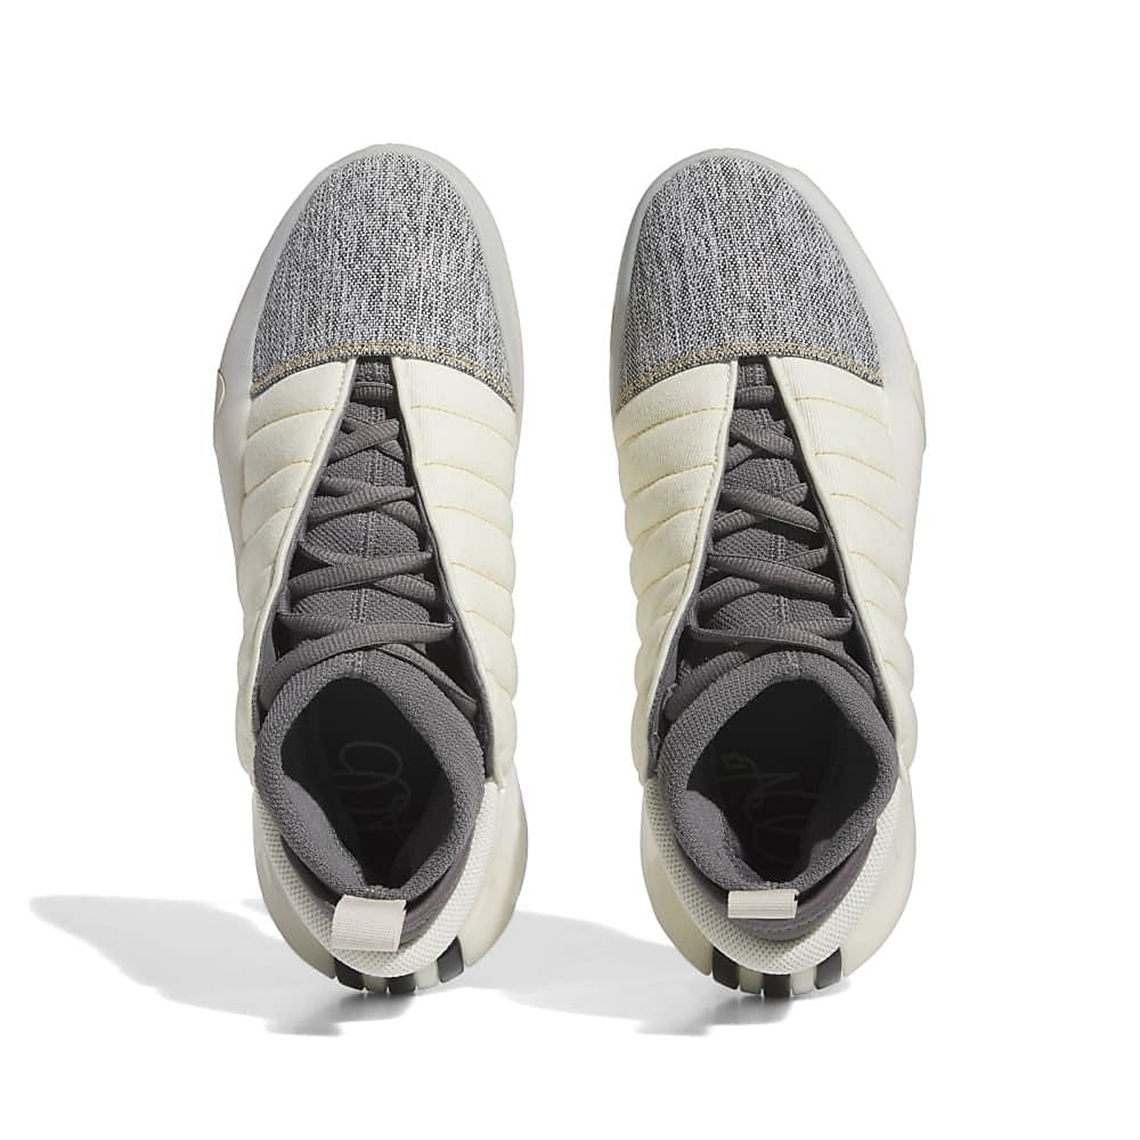 Adidas Harden Vol 7 Cream White Carbon Grey Four If5619 1